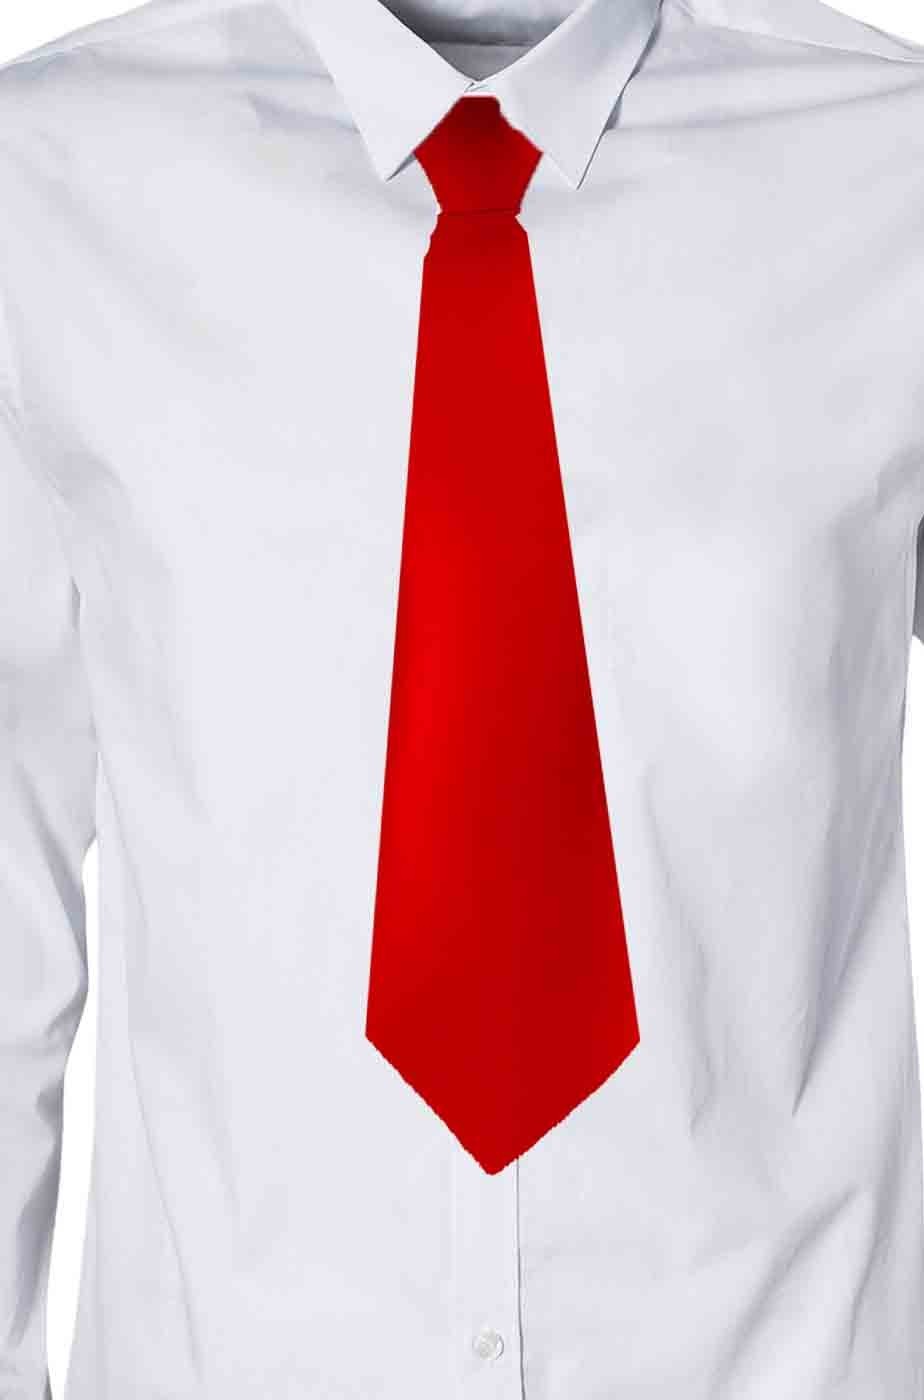 Cravatta di raso rossa con elastico annodata